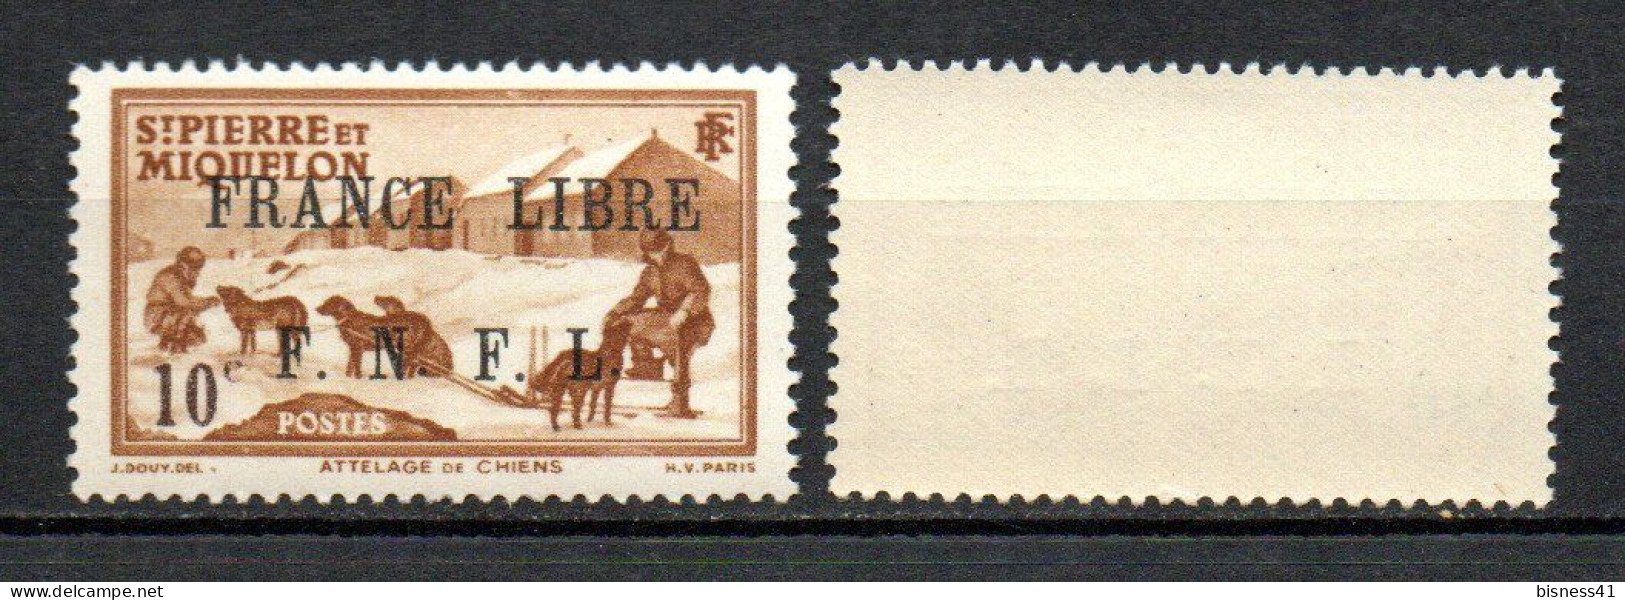 Col40 Colonie SPM St Pierre Et Miquelon France Libre N° 250 Neuf XX Luxe Cote : 33,00€ - Unused Stamps